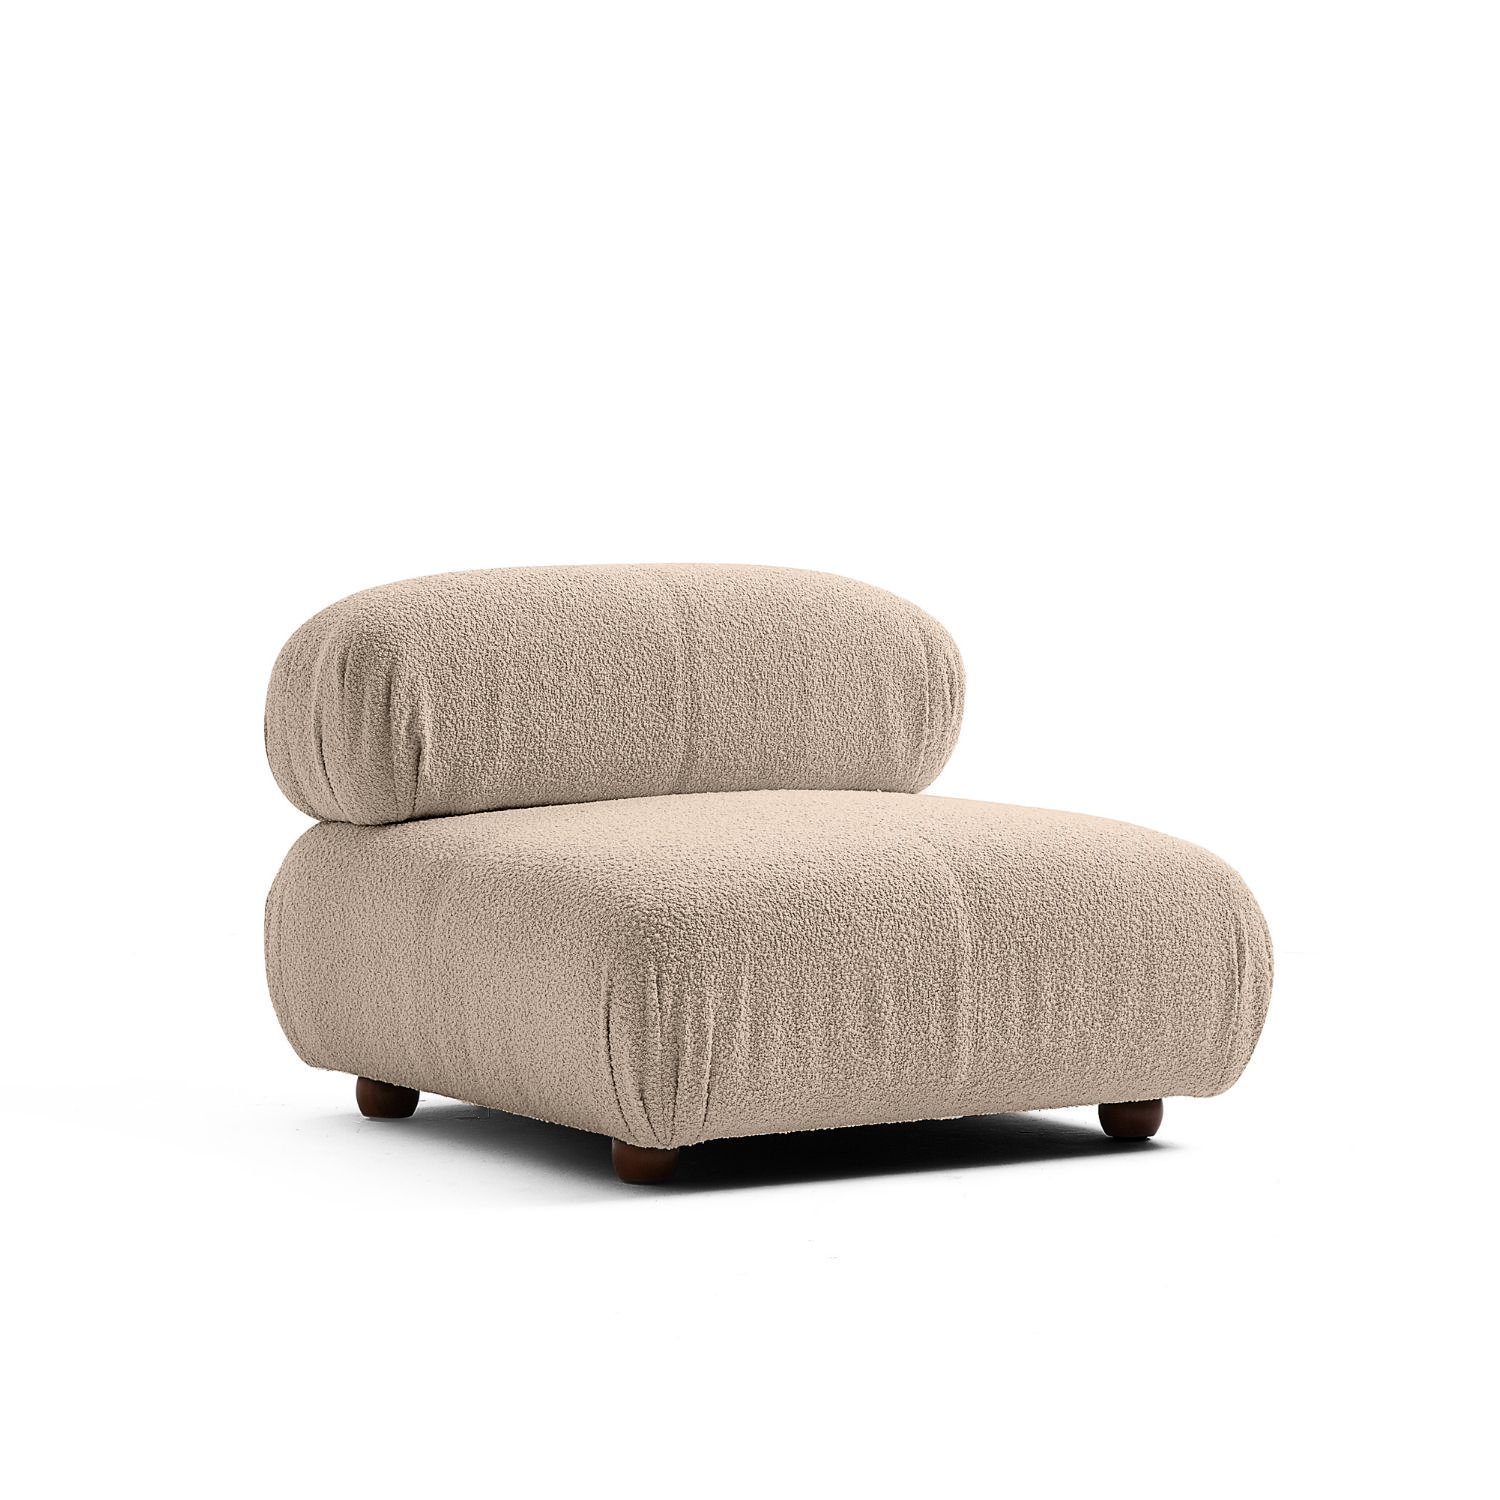 Touch me Sofa Knuffiges Sitzmöbel neueste Generation aus Komfortschaum Graubraun-Lieferung und Aufbau im Preis enthalten!